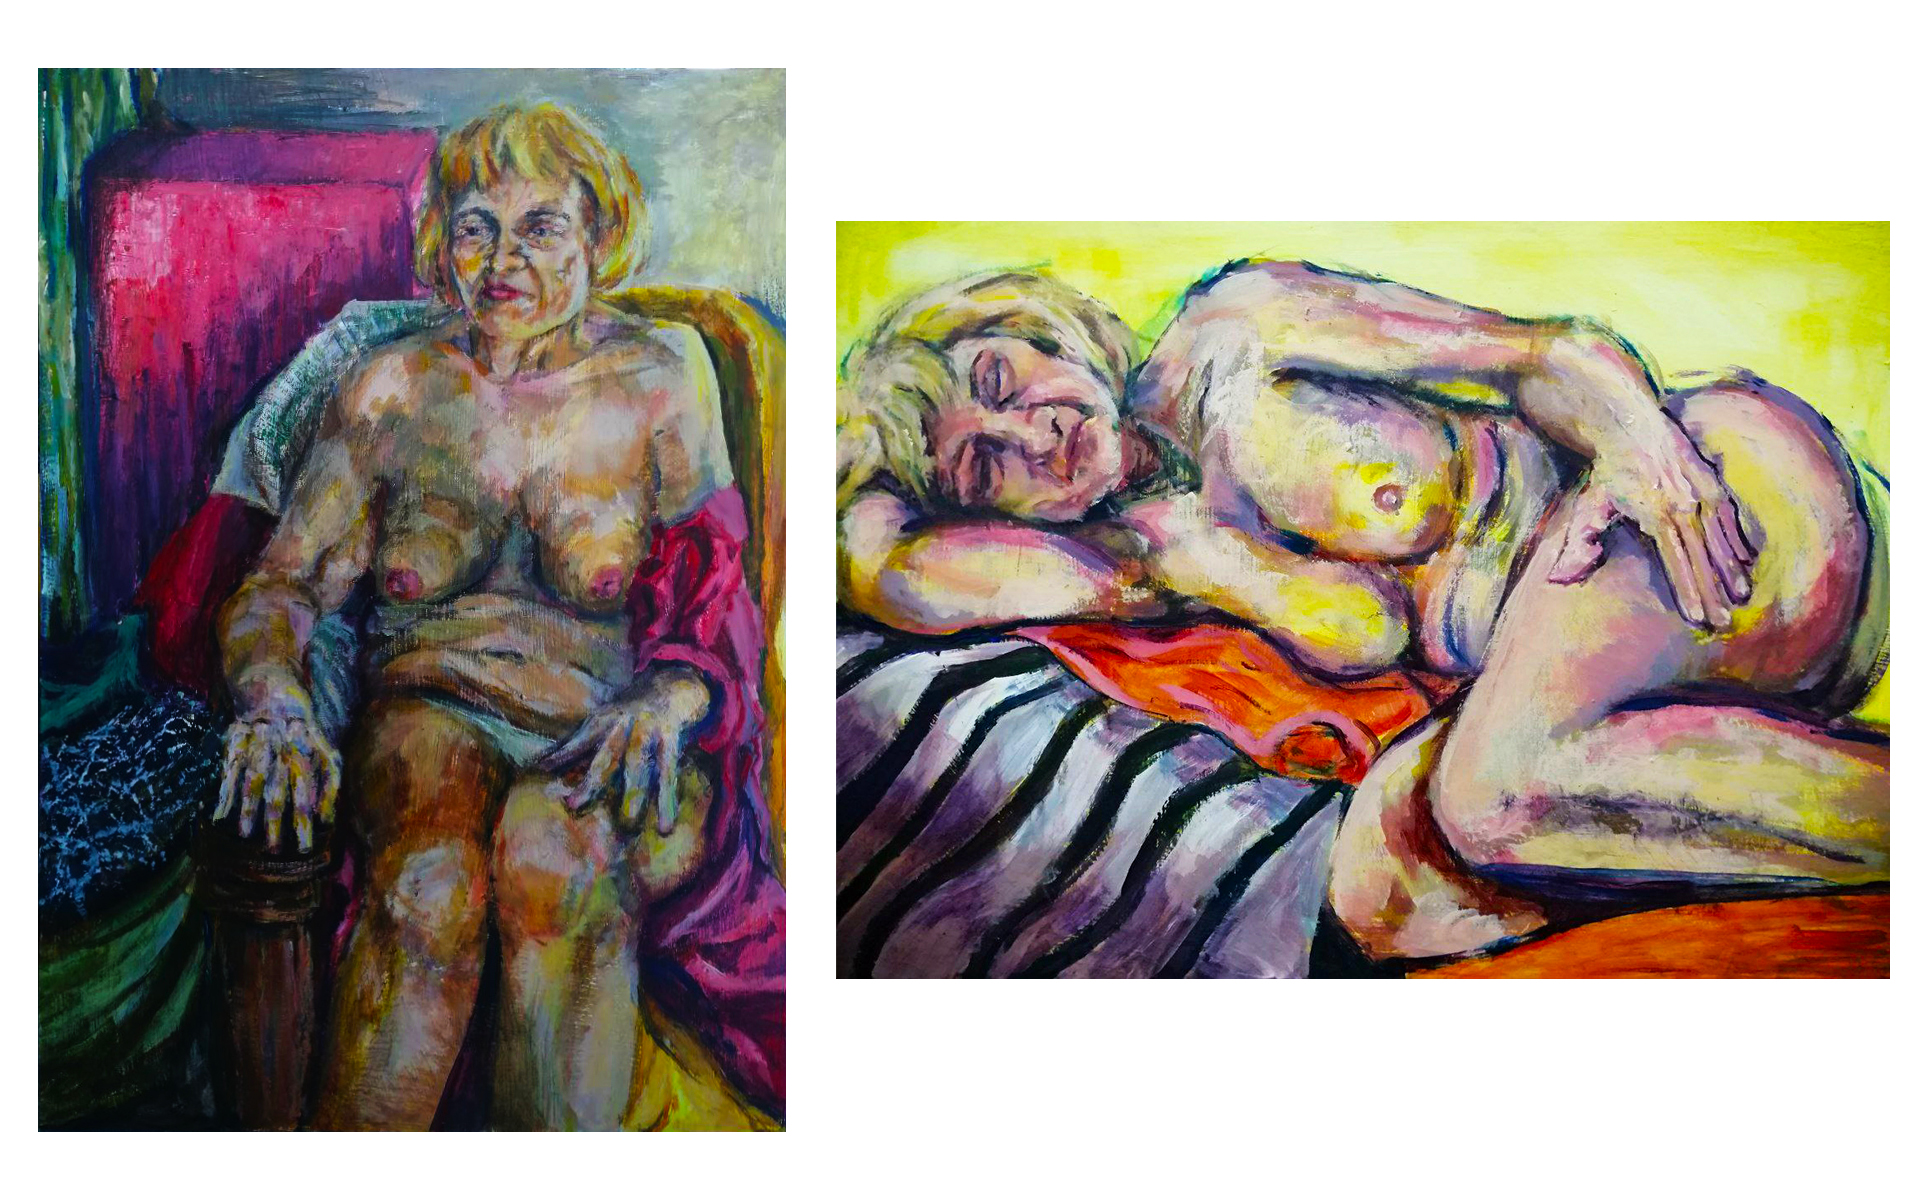 Grafika zawiera dwa studia postaci kobiety - jedna w fotelu przy różowym postumencie, druga leżąca na materiale w paski z żółtym tłem. 